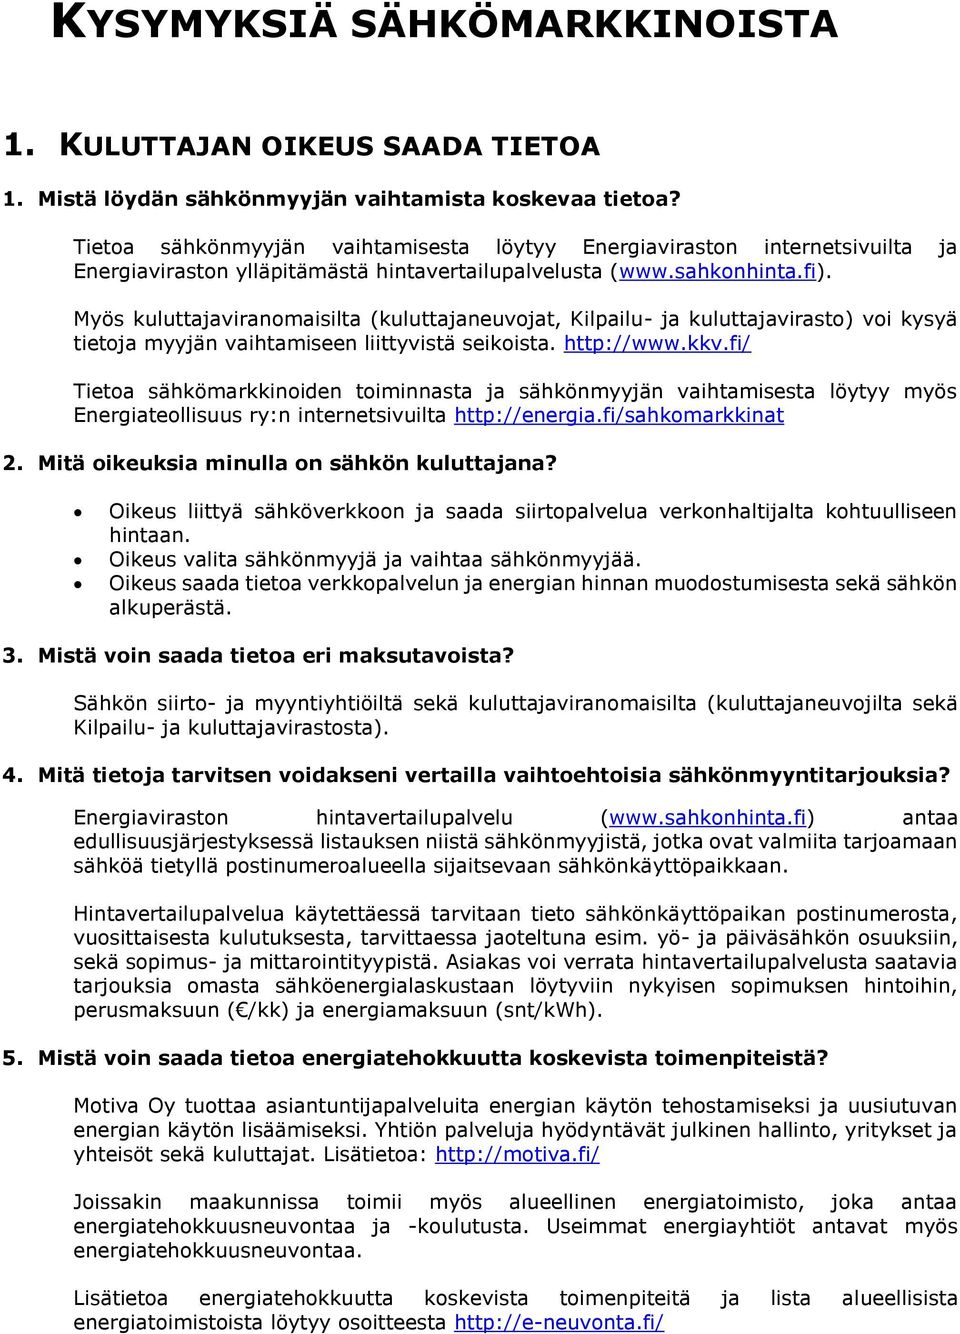 KYSYMYKSIÄ SÄHKÖMARKKINOISTA - PDF Free Download